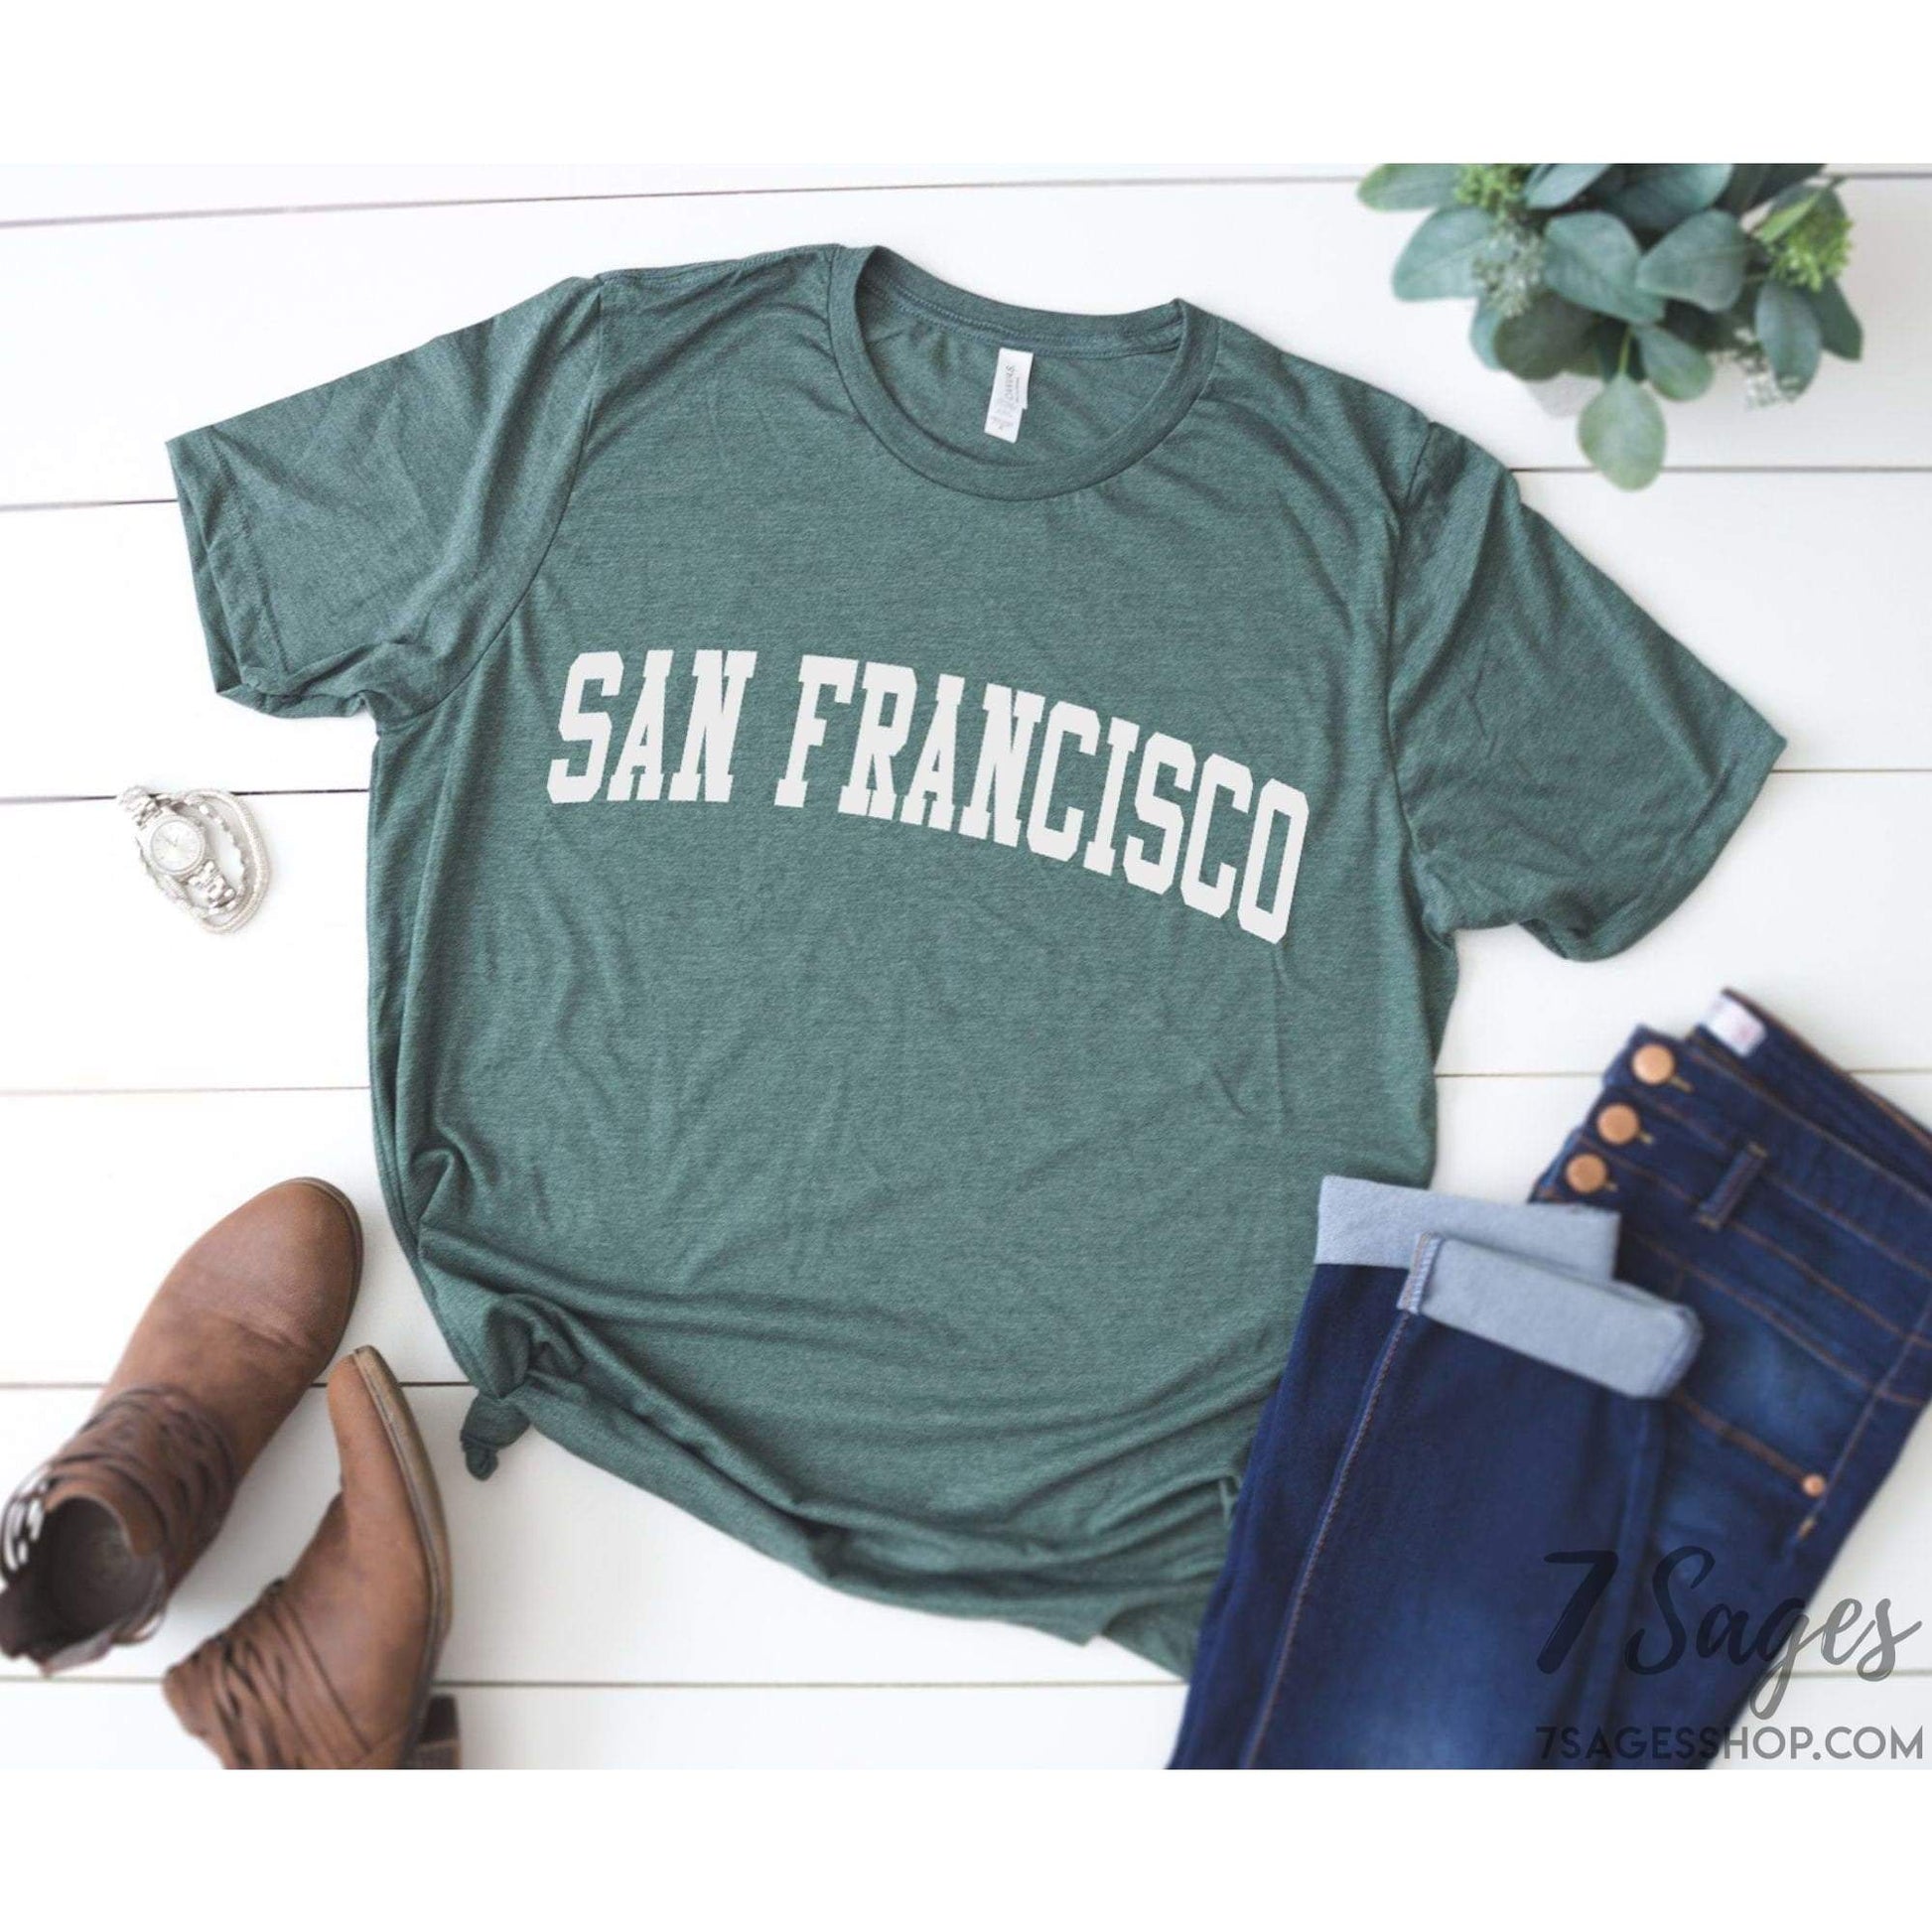 San Francisco Shirt - San Francisco T-Shirt - San Francisco Trip Shirt - San Francisco - Bay Area Shirt - Unisex Soft Shirt